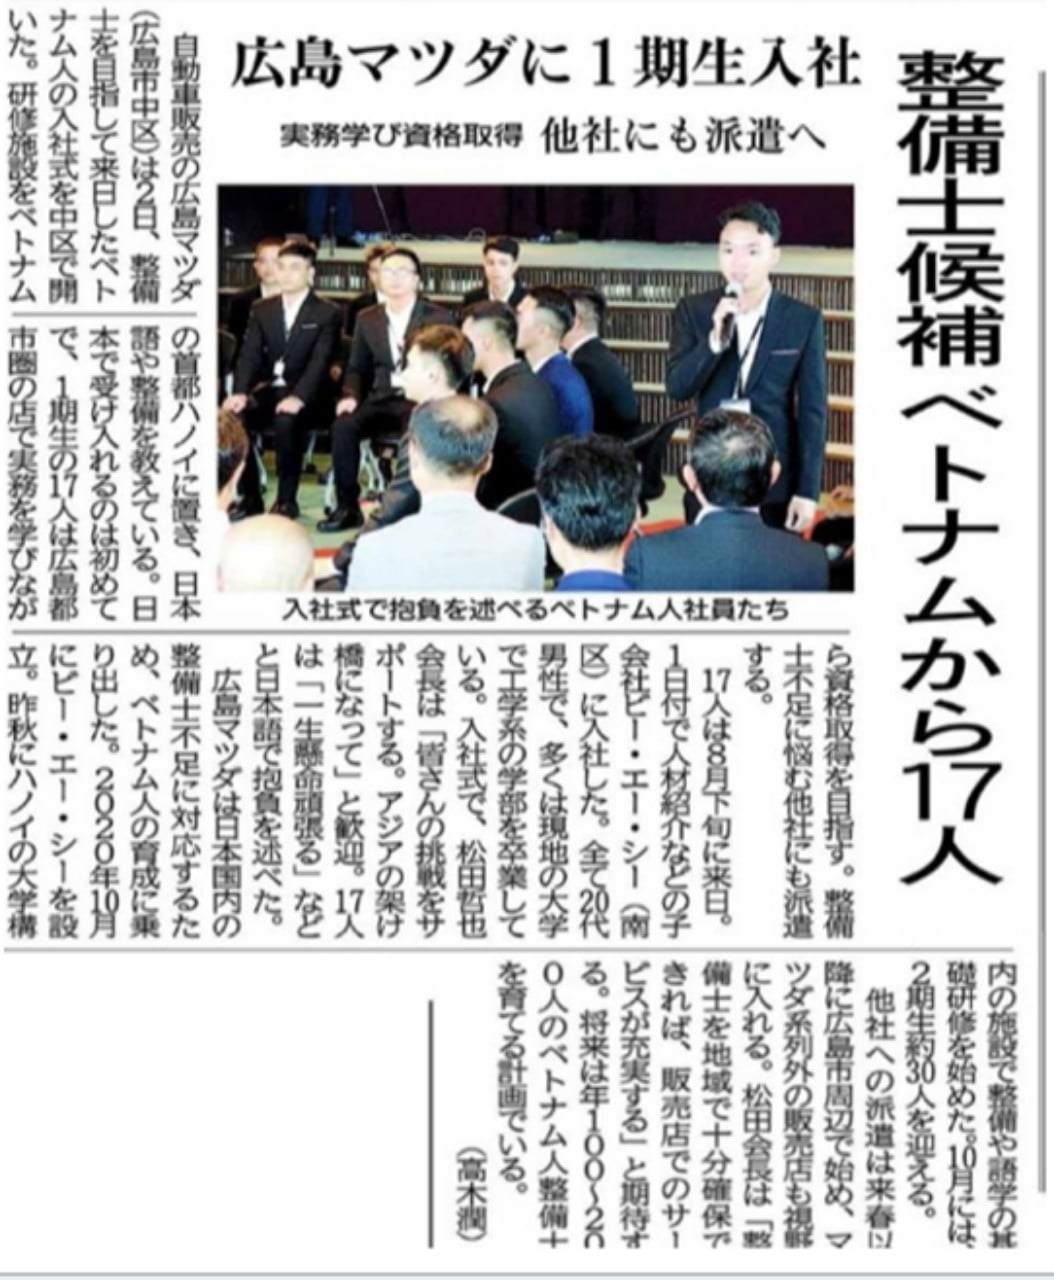 Lễ khai giảng được sự quan tâm của nhiều kênh báo chí Nhật Bản 